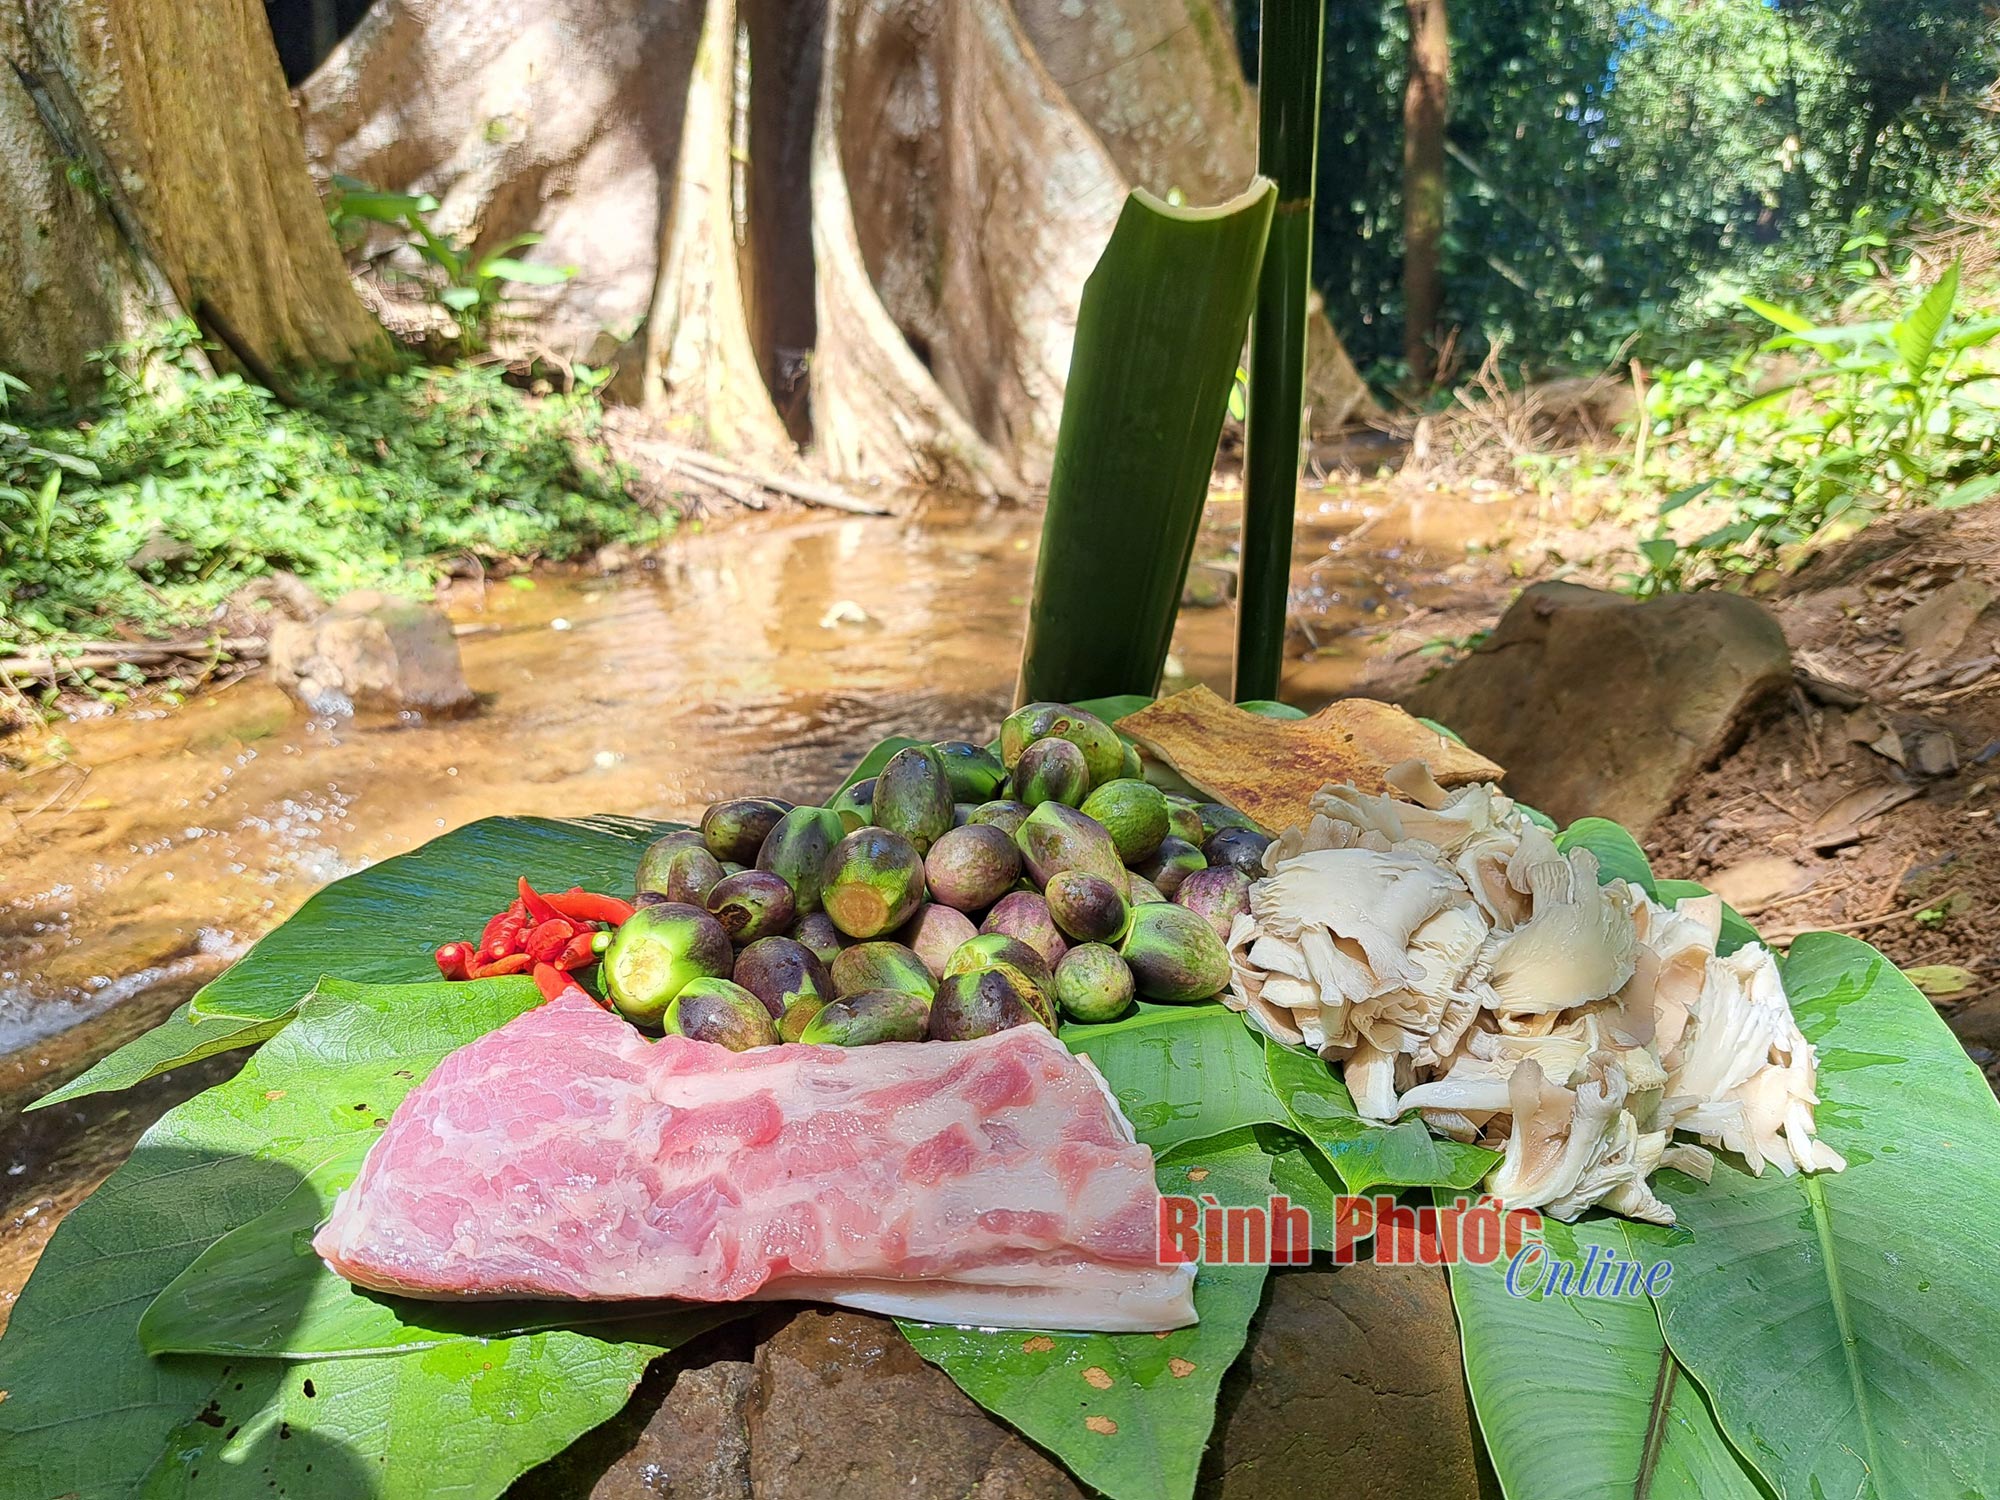 Độc, lạ một món canh sền sệt ở vùng núi Bình Phước, thịt heo rừng hòa quyện với rau rừng, quả rừng thơm phức - Ảnh 1.